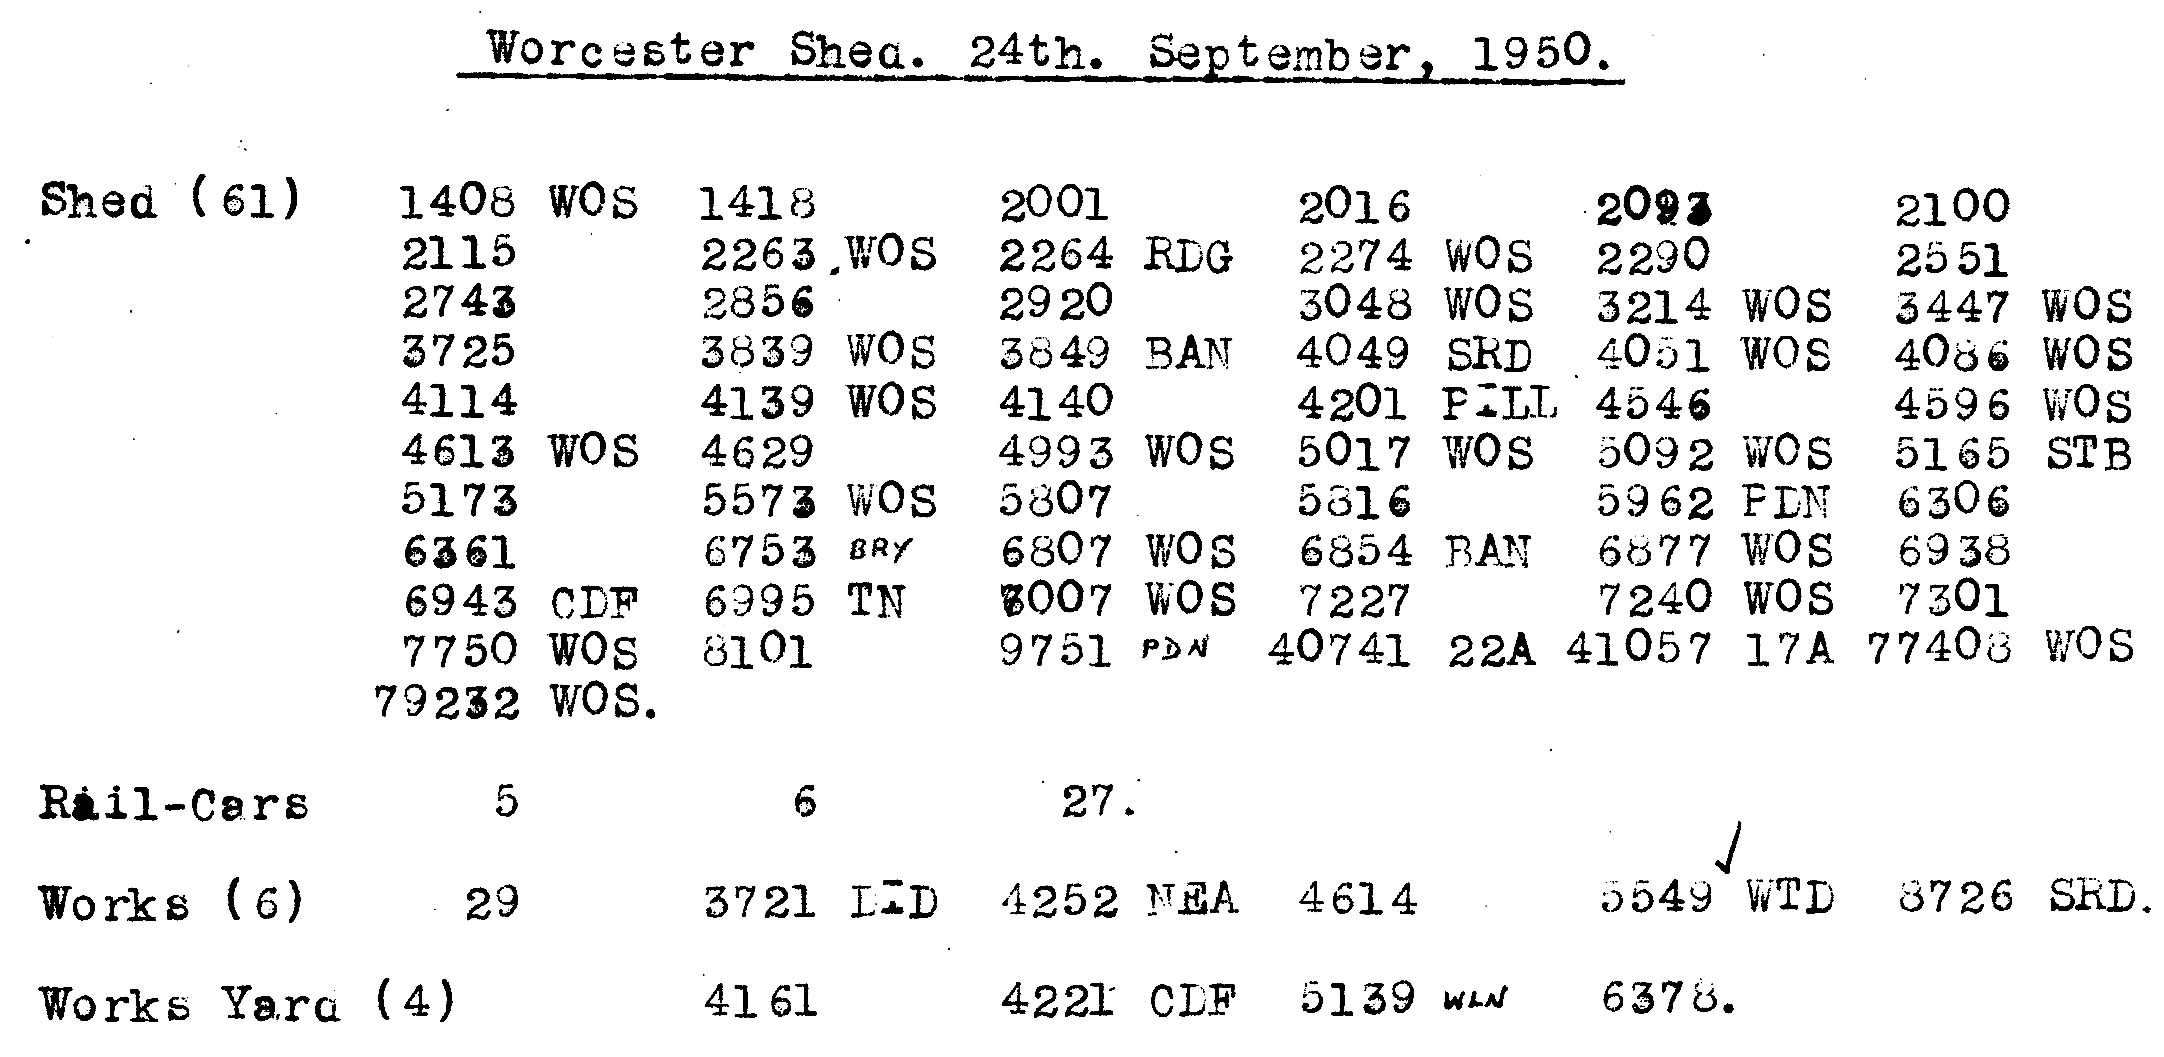 24th September 1950 - Worcester Shed.